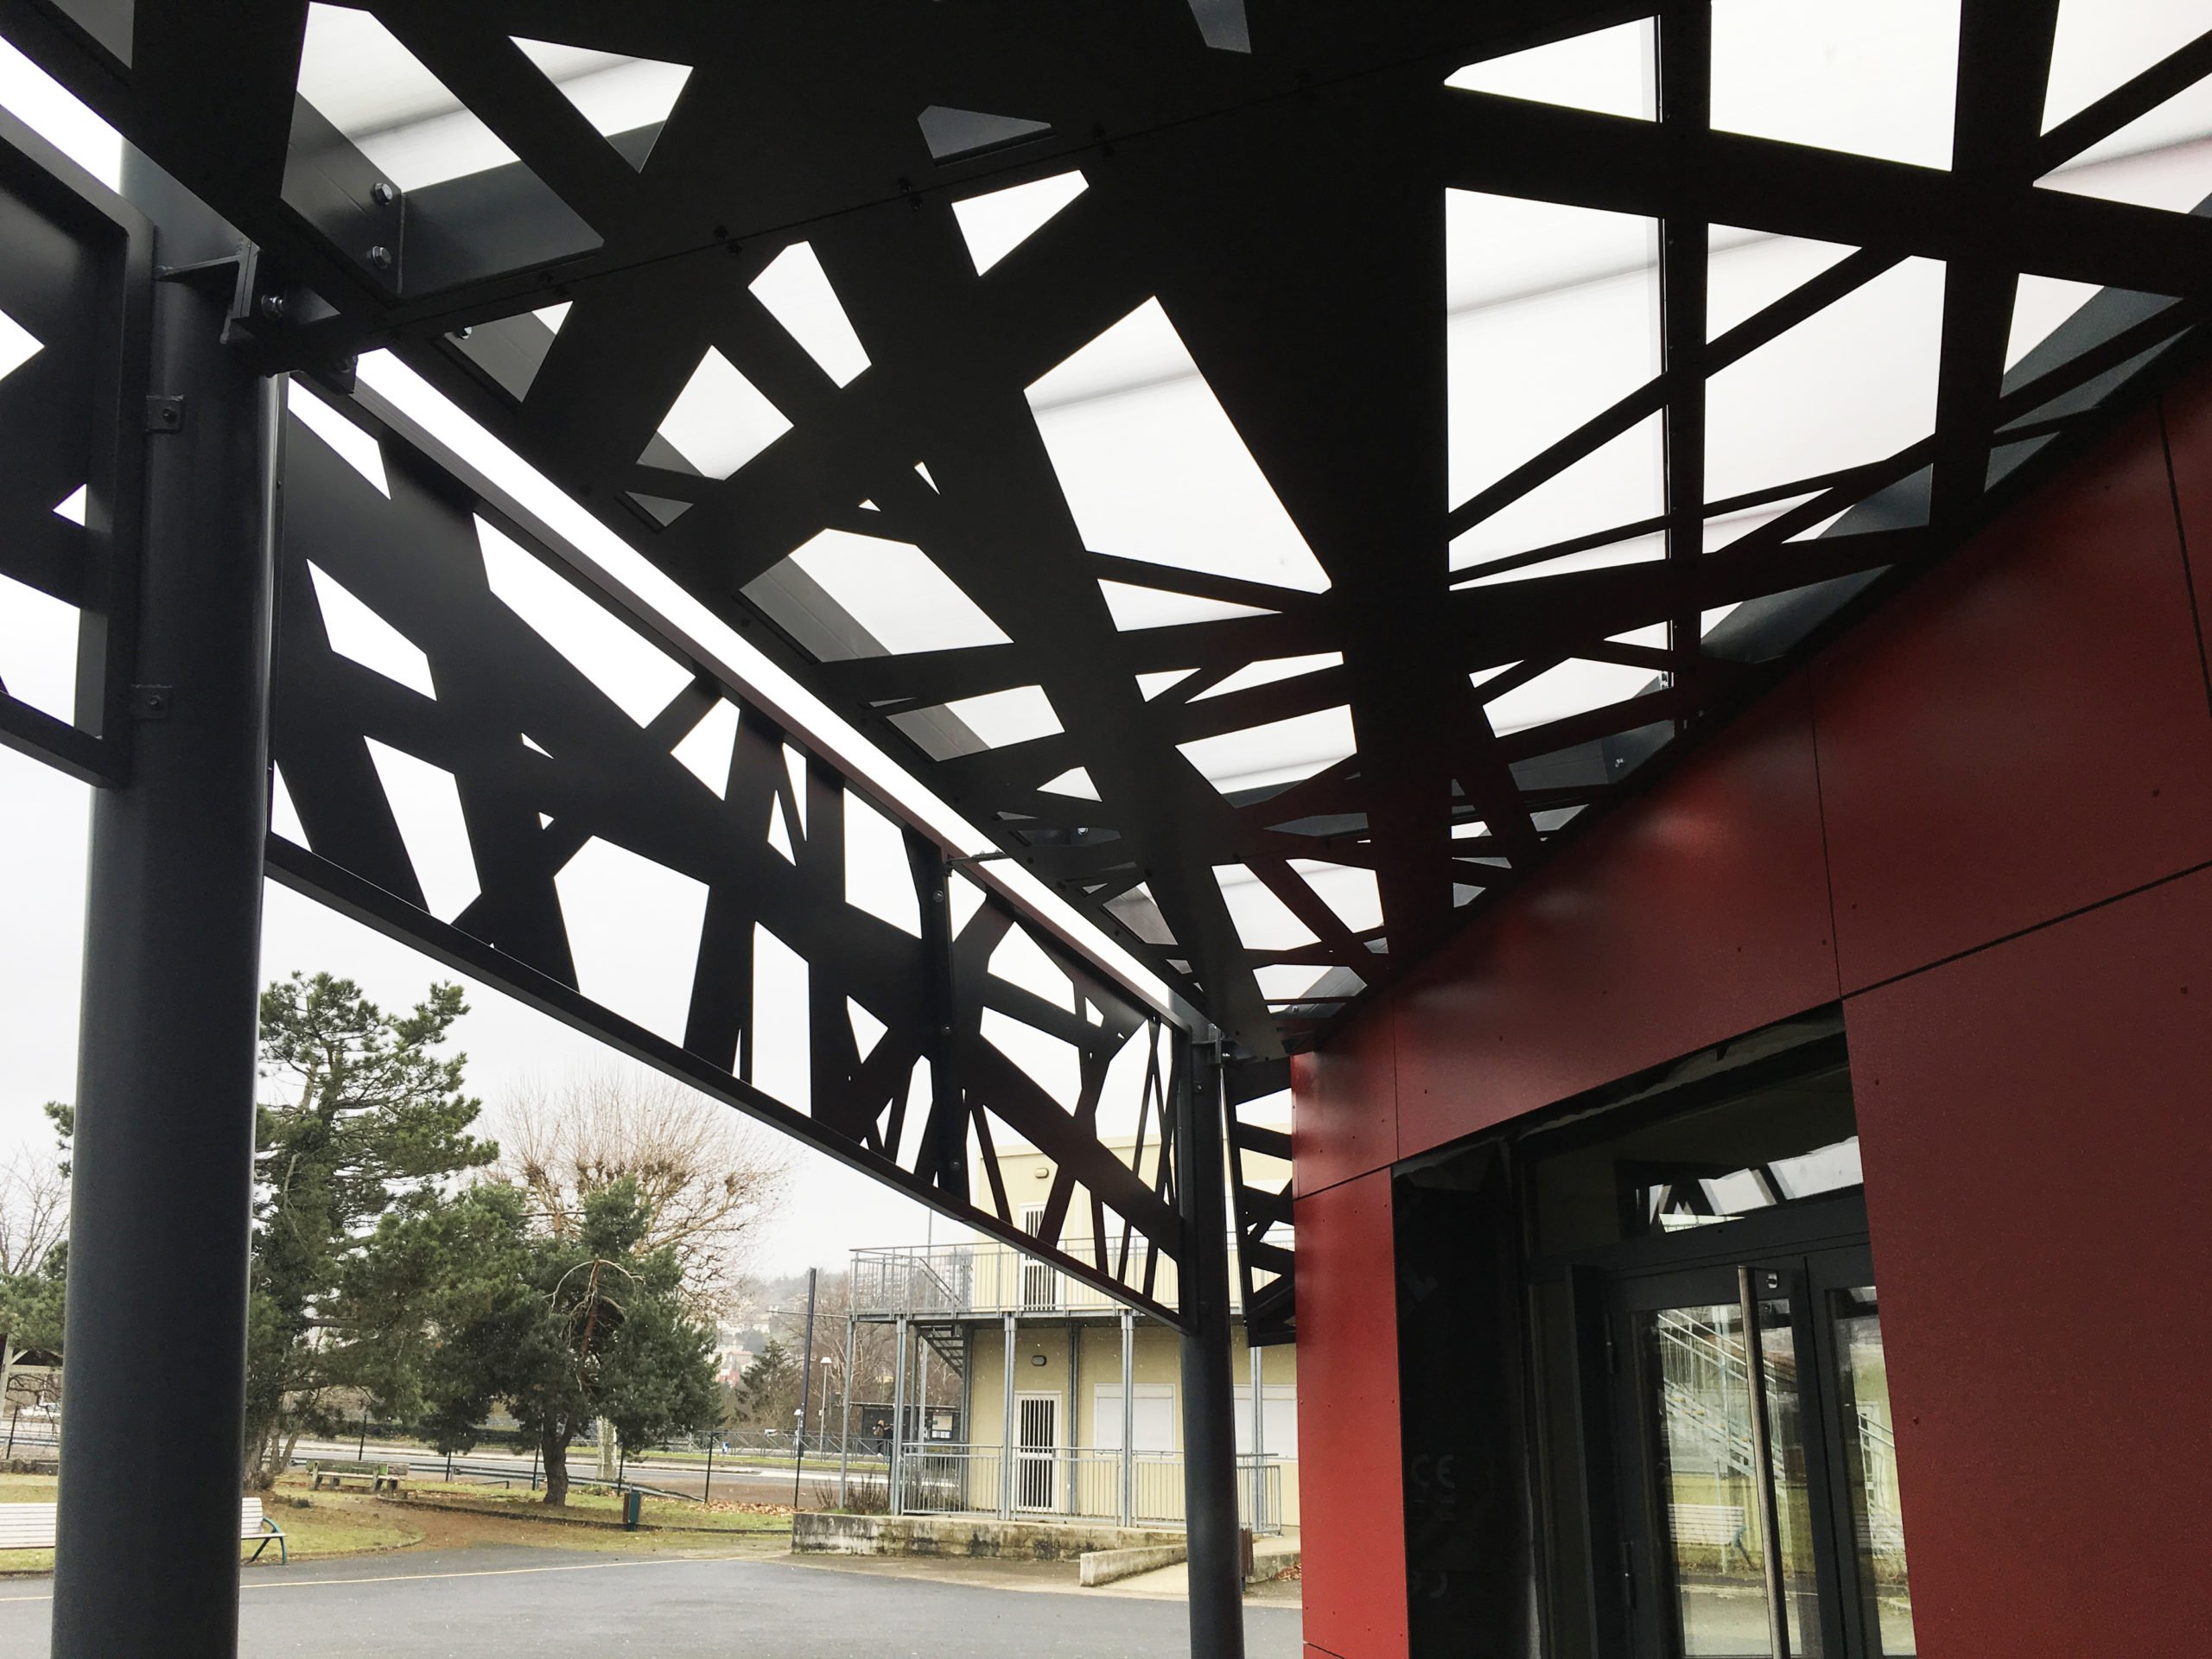 Une rénovation énergétique haut gamme pour ce CREM du lycée Simone Weil à St Priest en Jarez